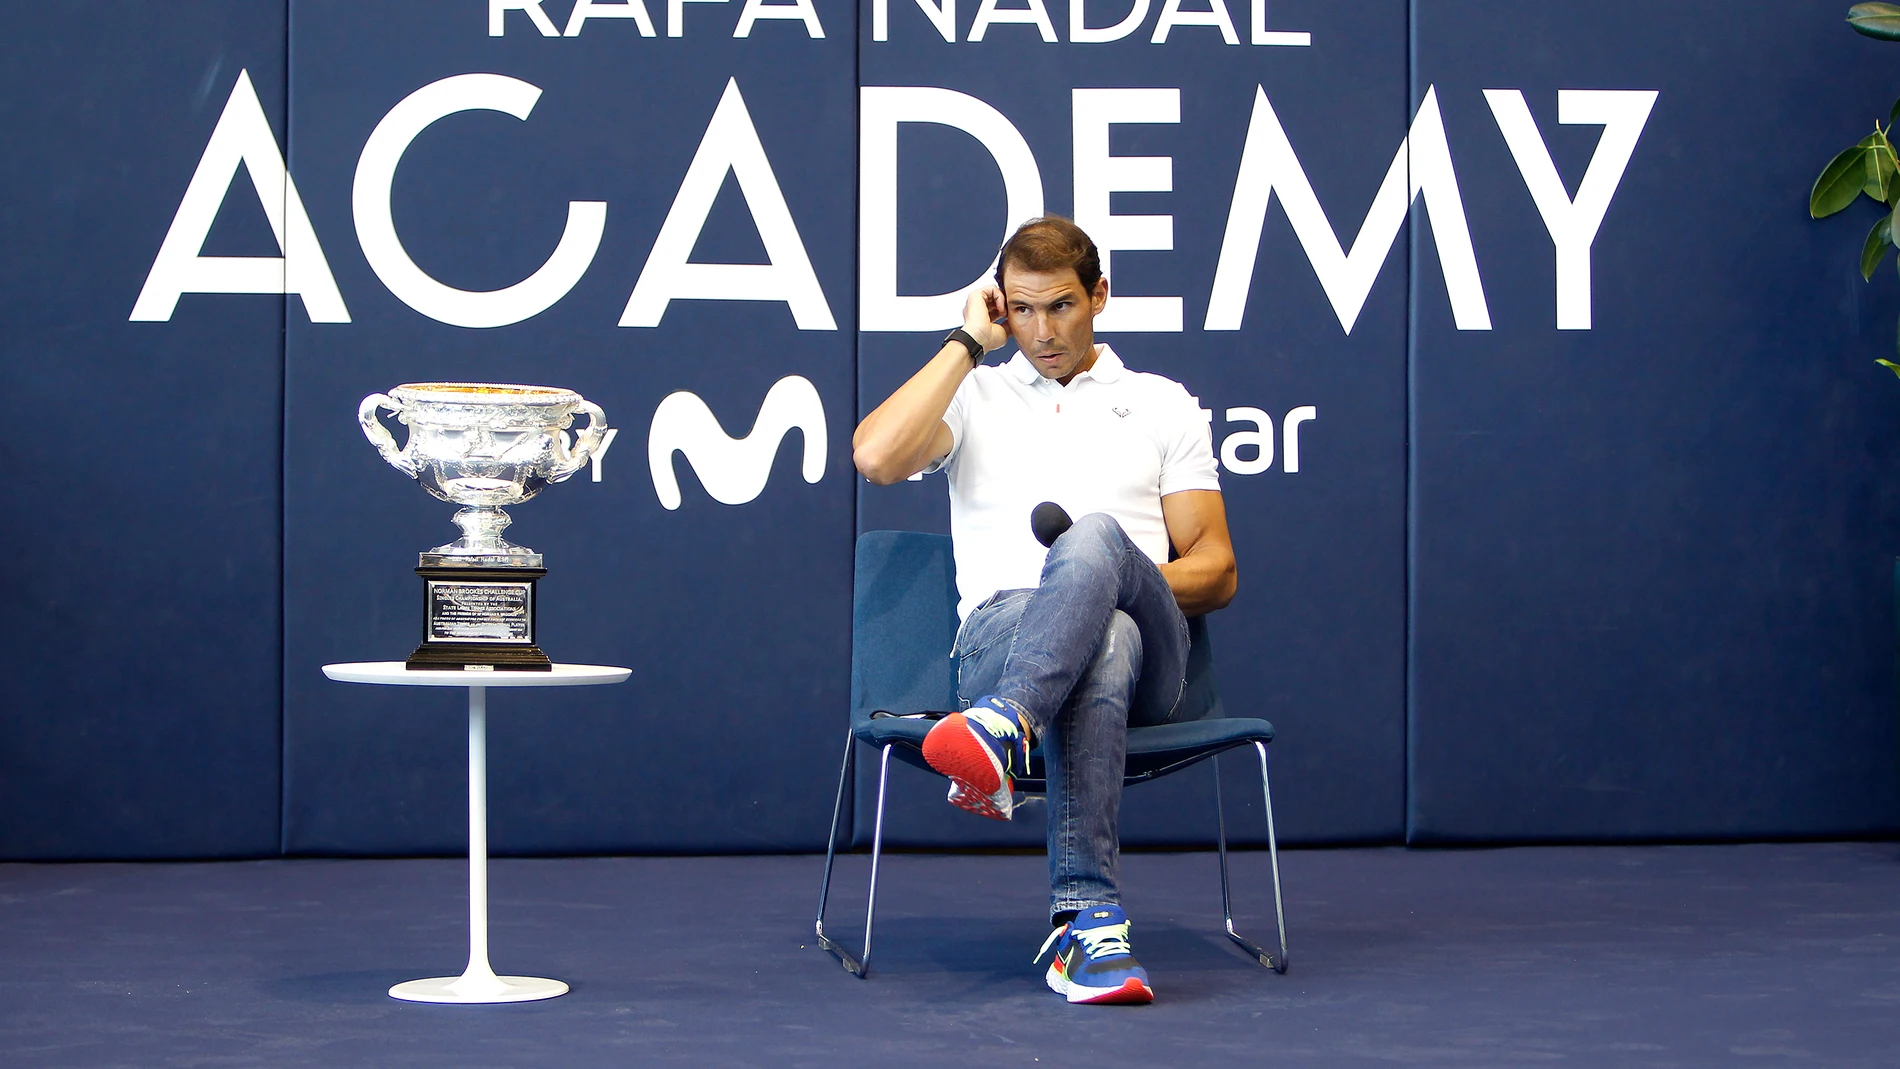 Rafa Nadal ha hecho historia con la conquista del vigésimo primer Grand Slam